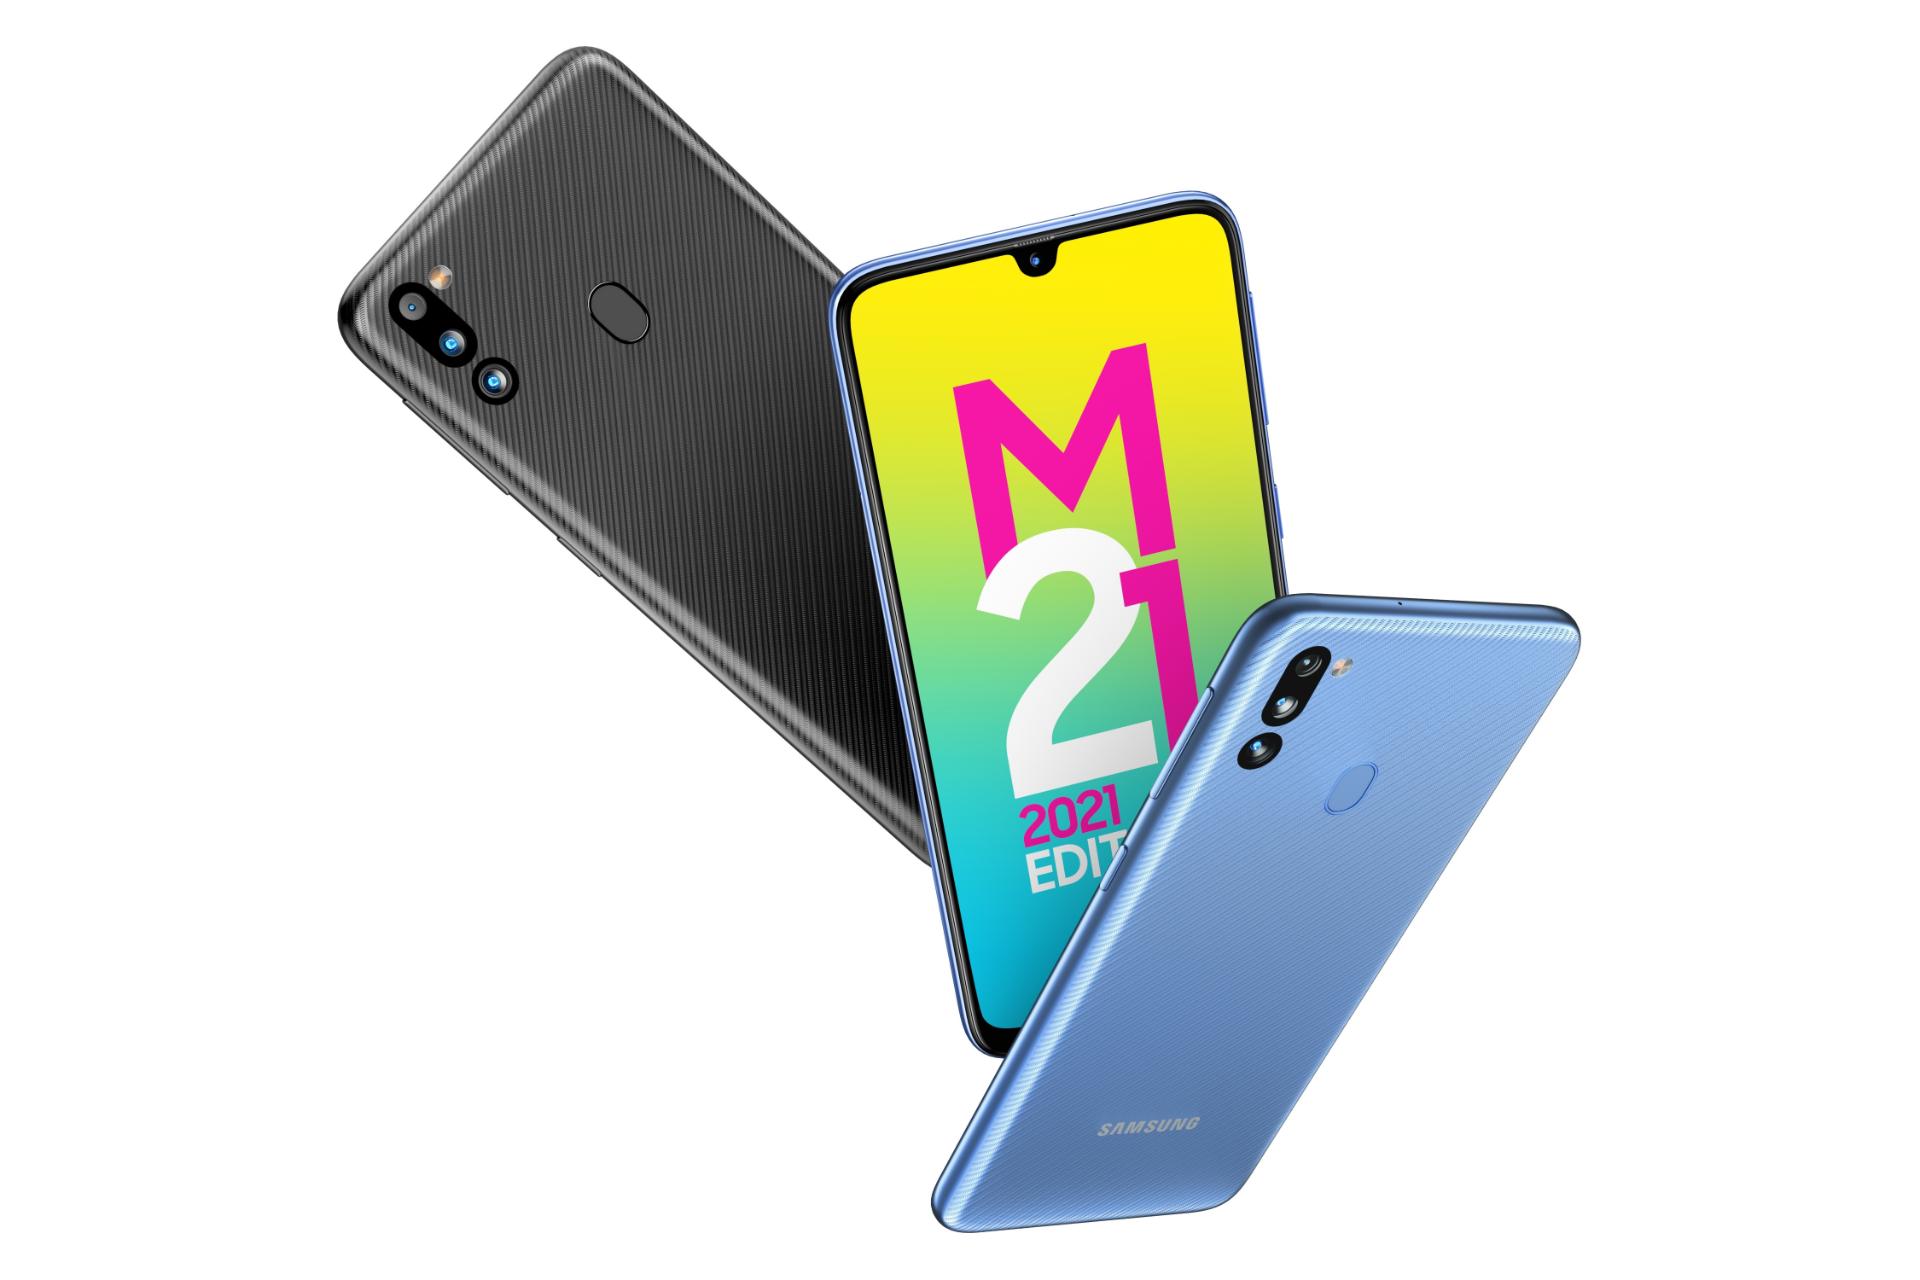 رنگ های مختلف Samsung Galaxy M21 2021 / گوشی موبایل گلکسی M21 سامسونگ نسخه 2021